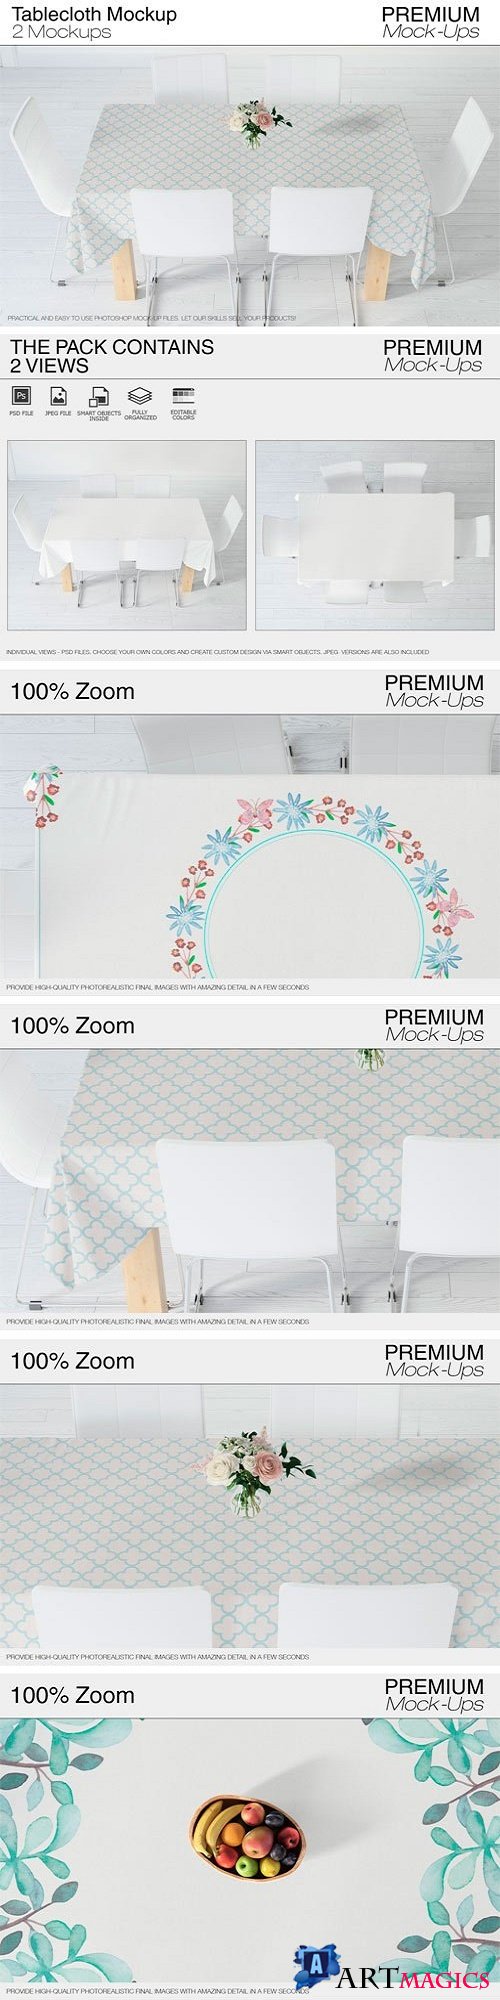 Tablecloth Mockup Set - 2423568